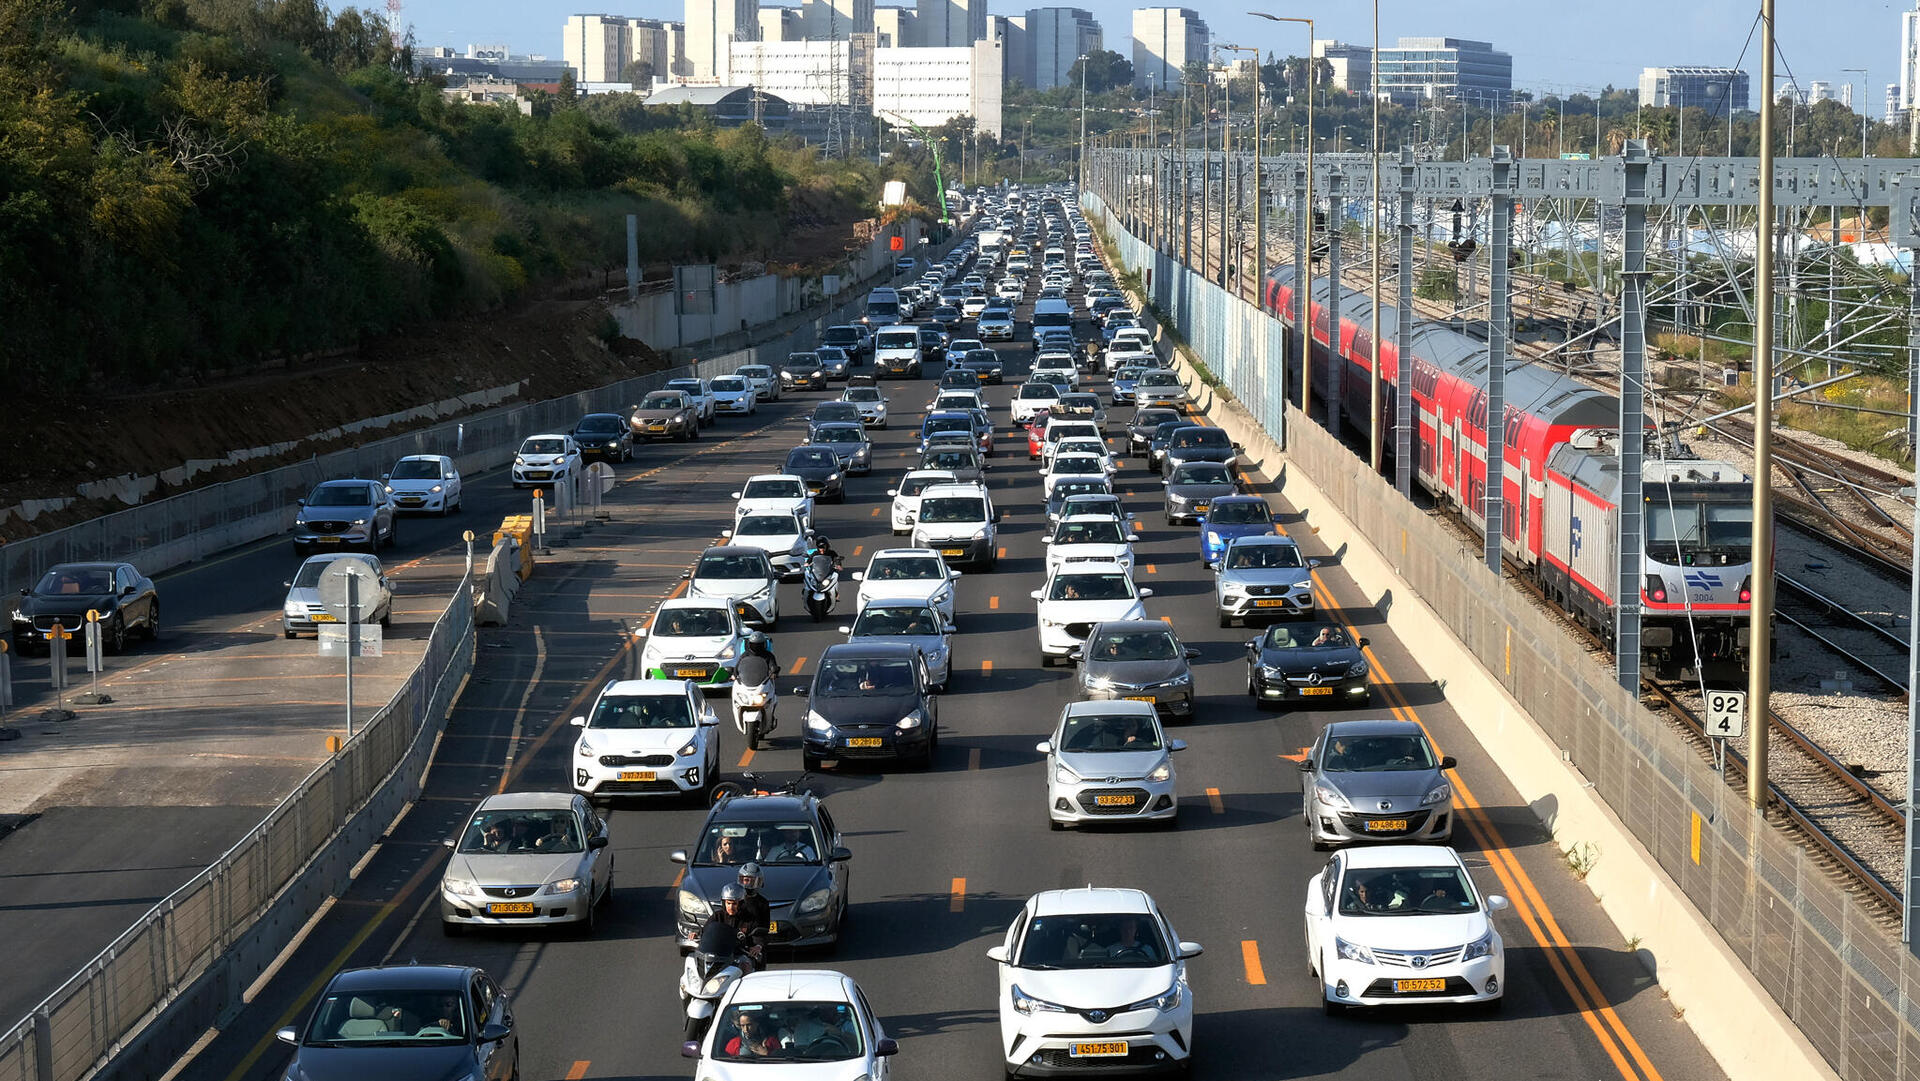 פקק תנועה ב נתיבי אילון   תל אביב כביש כבישים עומס תנועה פקקים